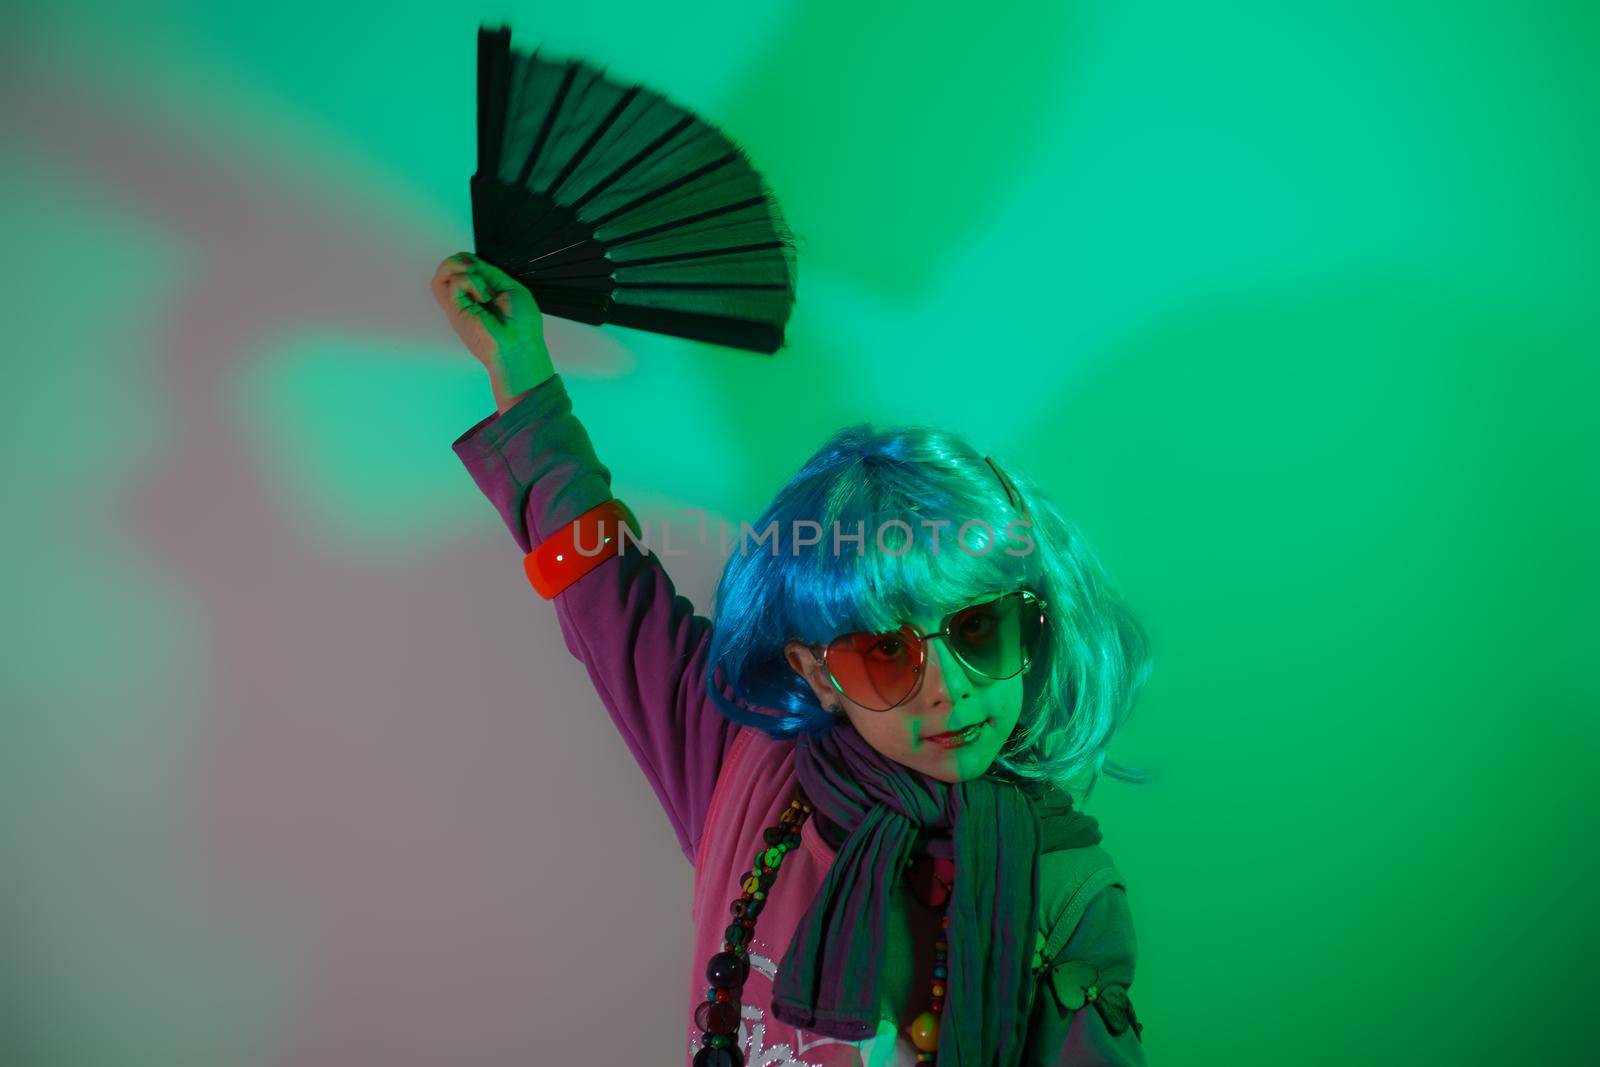 Little girl posing with a fan by bepsimage